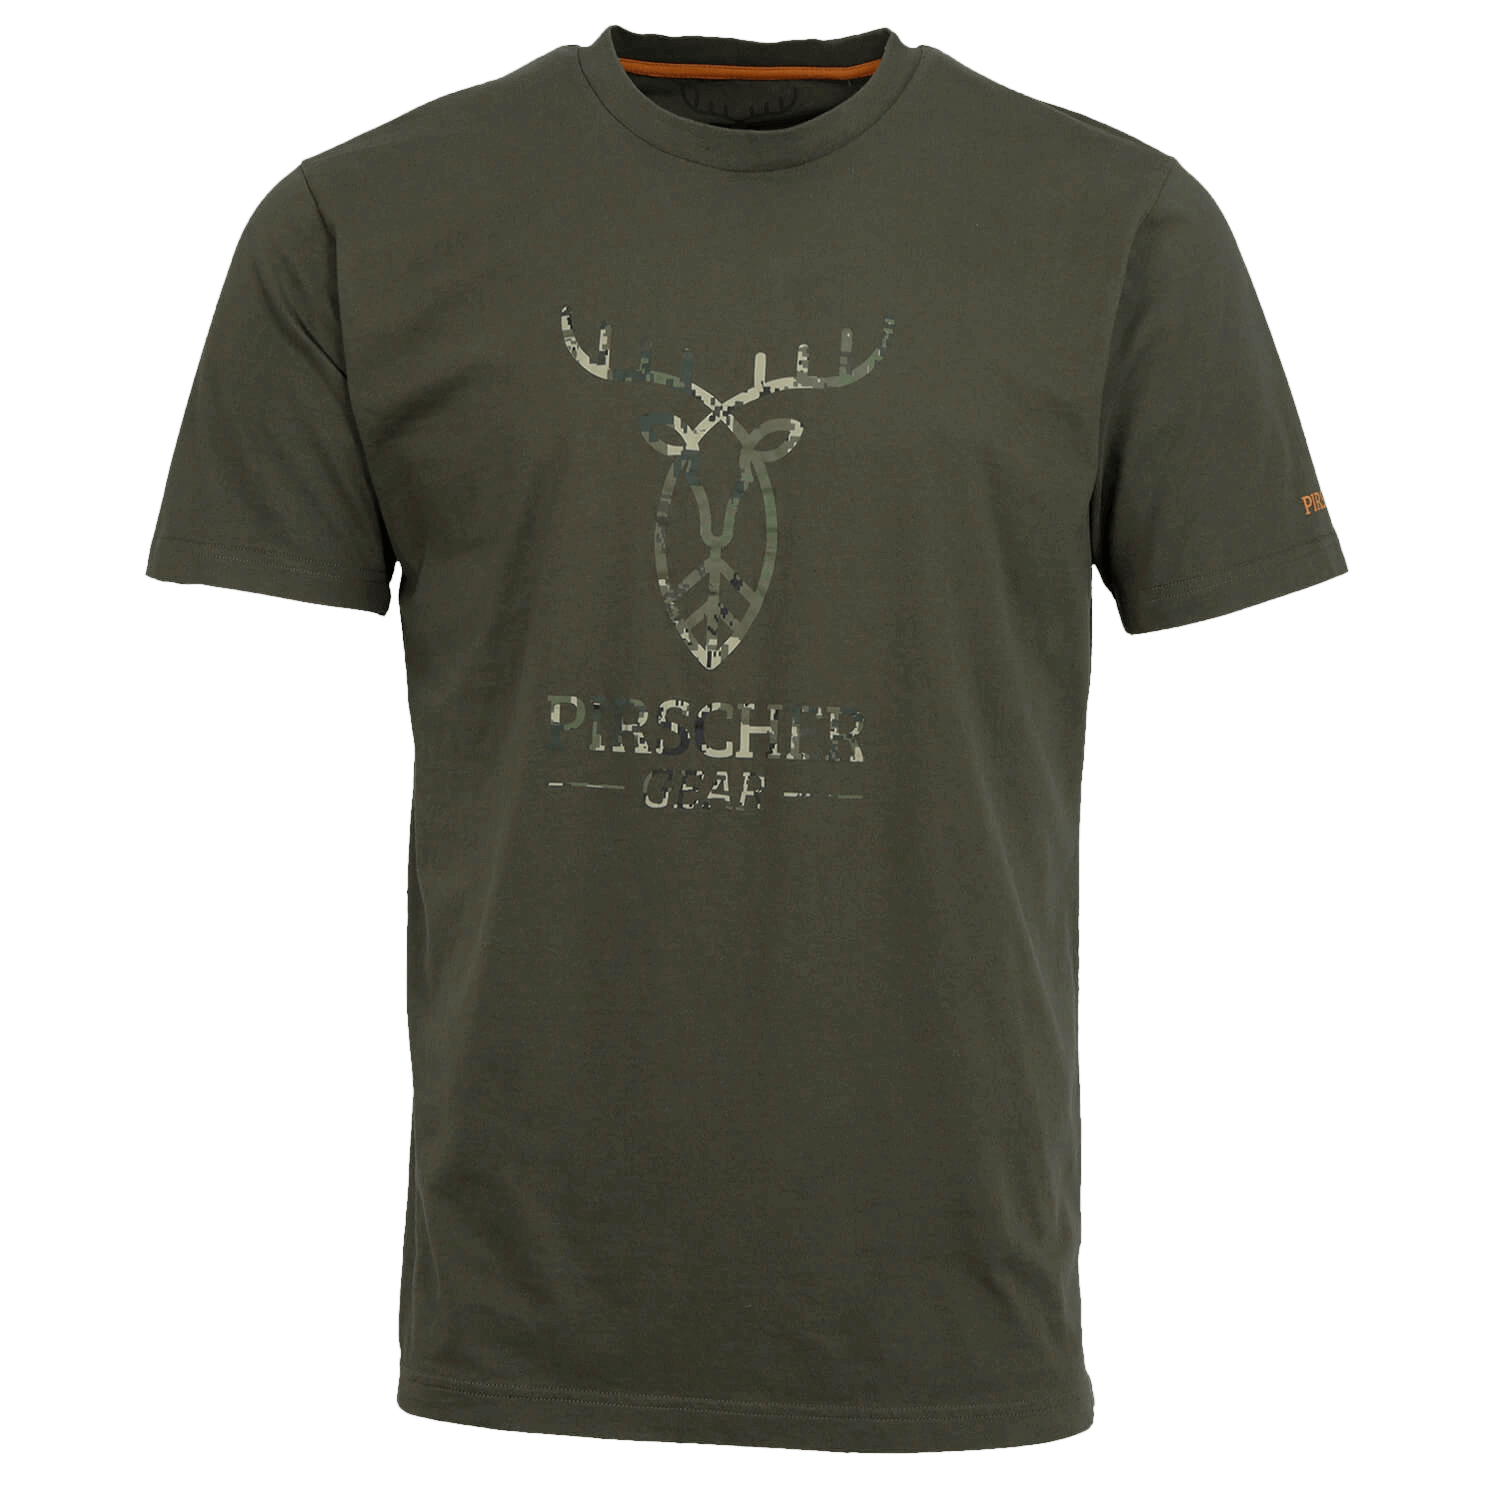 Pirscher Gear T-Shirt Full Logo (Optimax) - T-Shirts